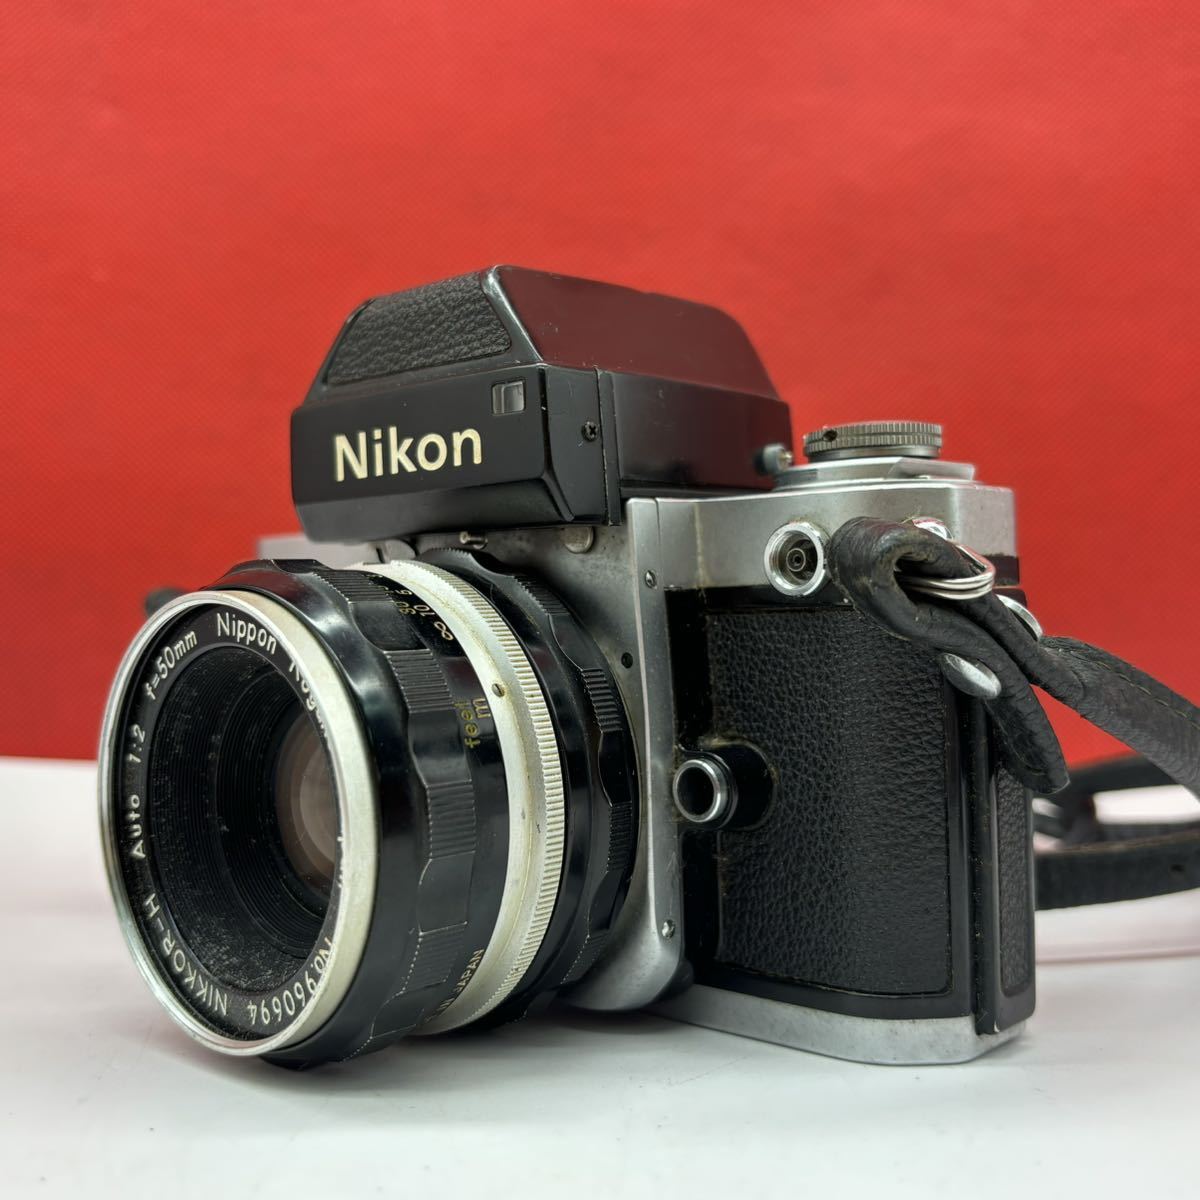 ◆ Nikon F2 フォトミック DP-1 フィルムカメラ 一眼レフカメラ ボディ NIKKOR-H Auto F2 50mm レンズ ジャンク ニコン_画像2